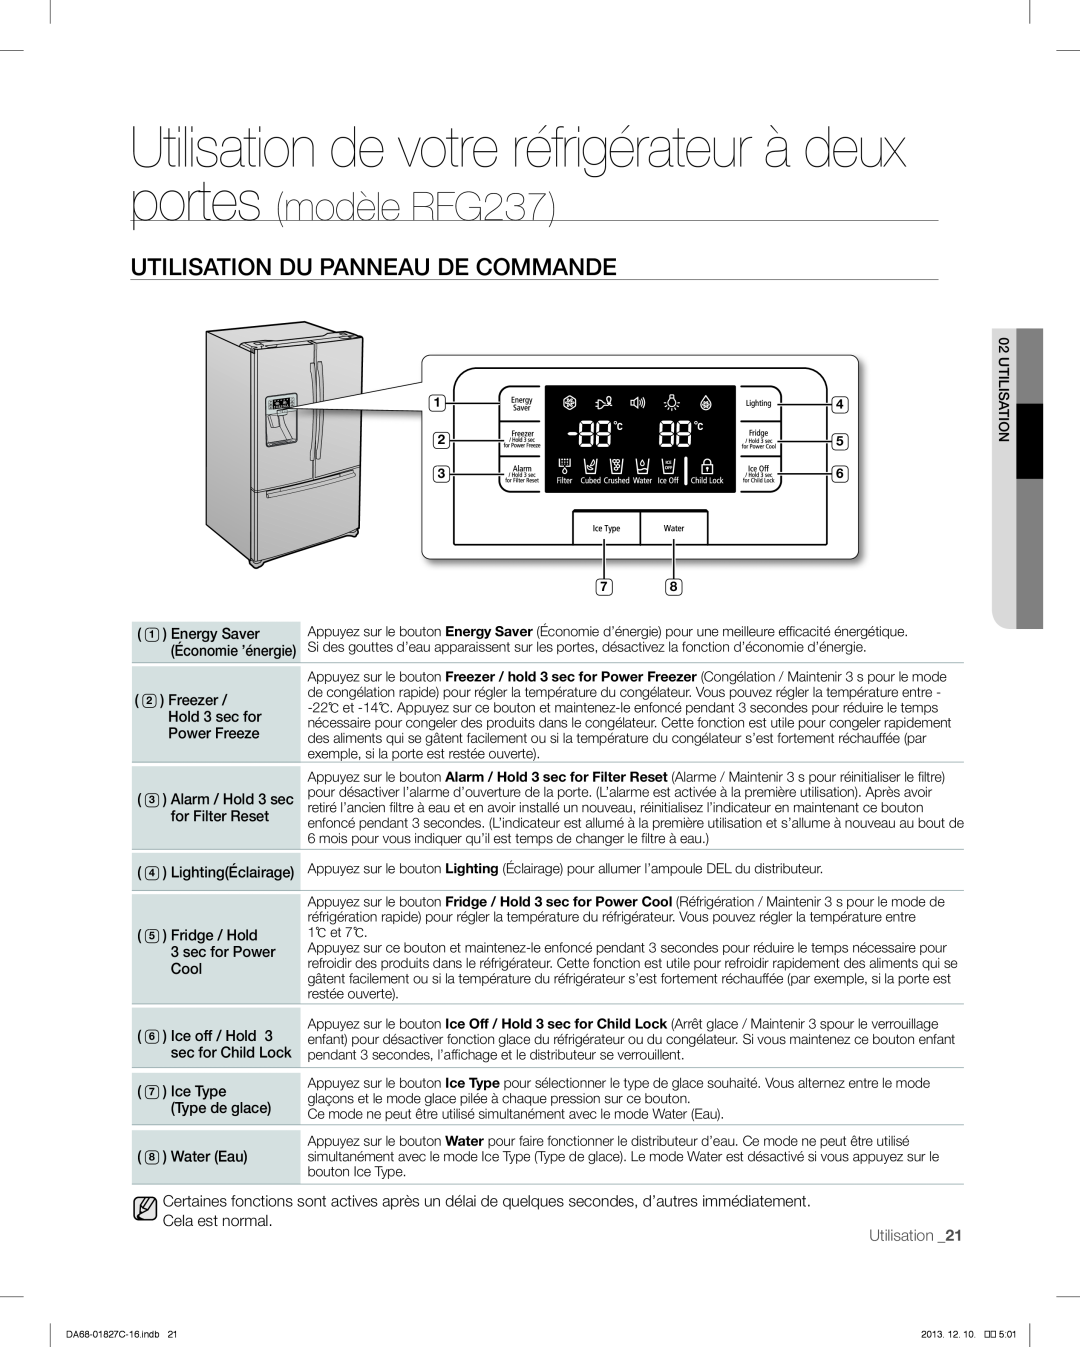 Samsung RFG237AARS Utilisation de votre réfrigérateur à deux portes, Utilisation Du Panneau De Commande, Utilisation _21 